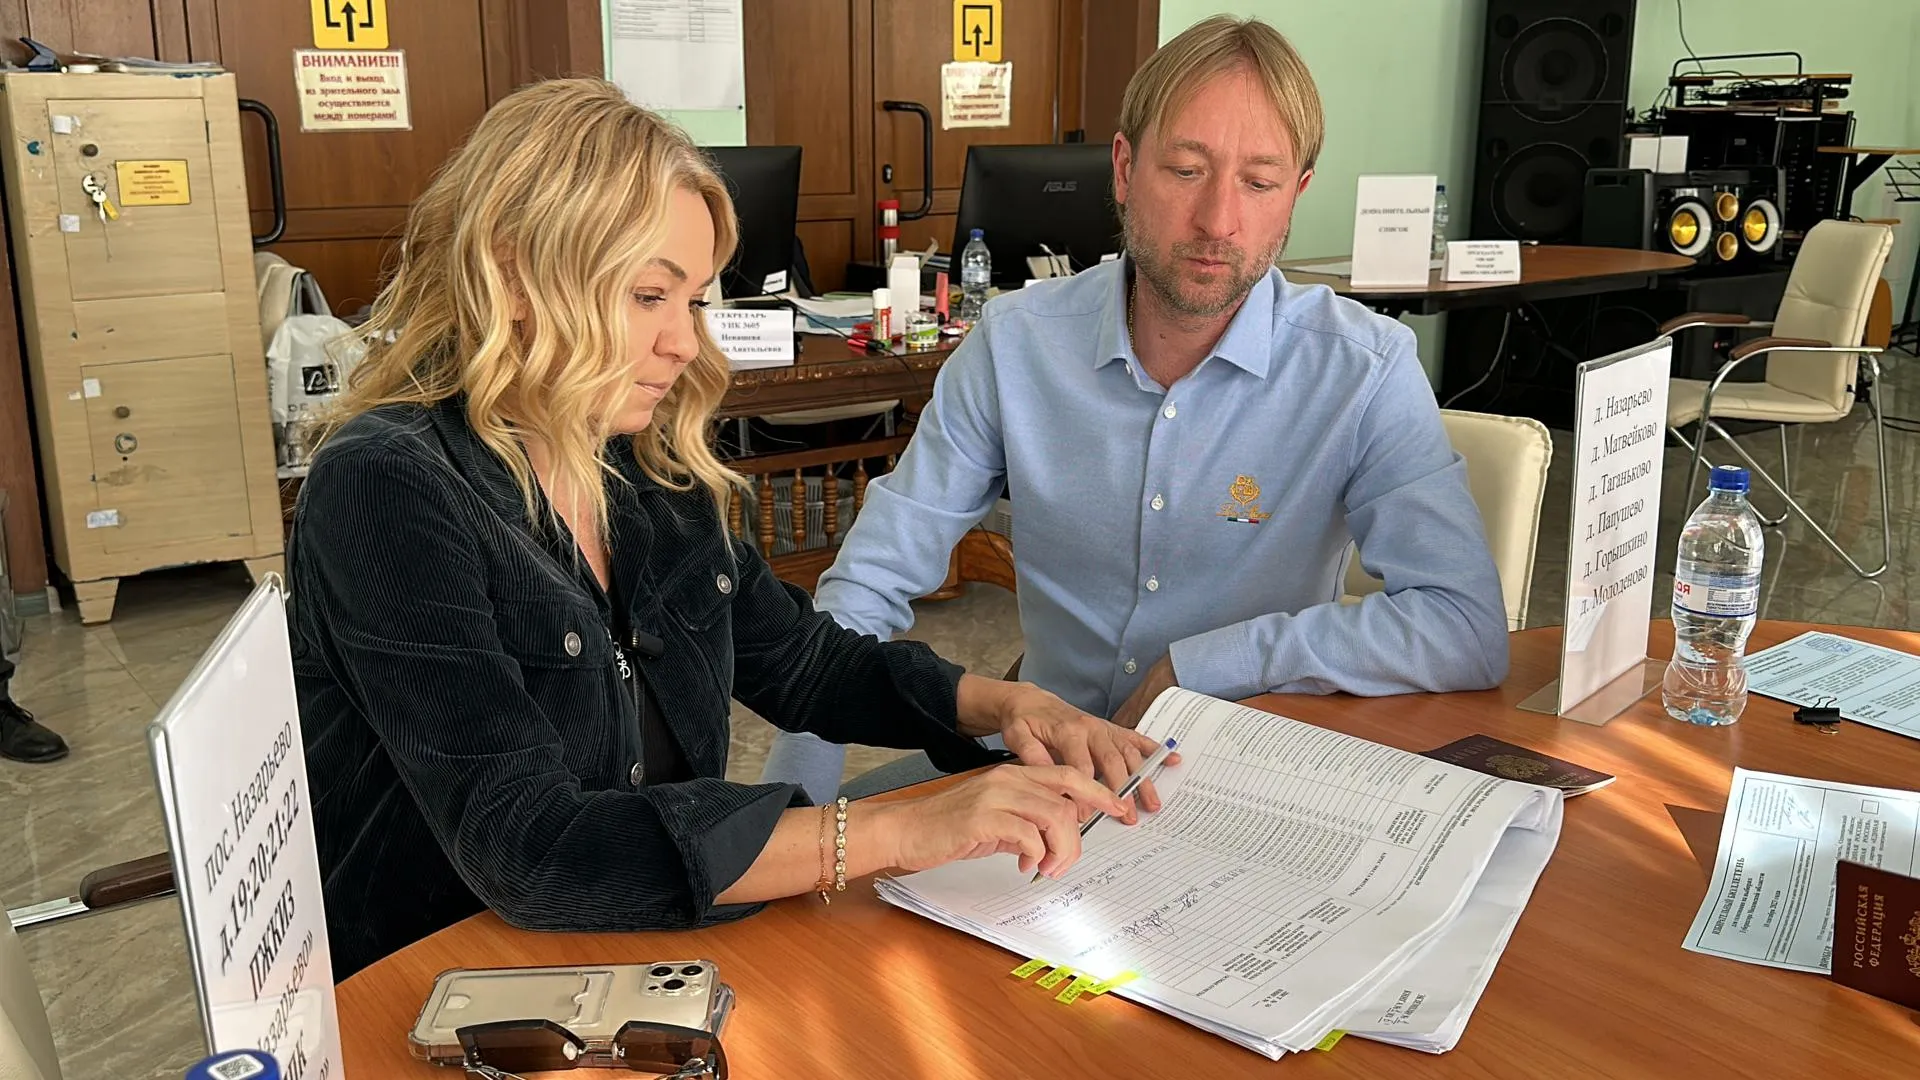 Яна Рудковская и Евгений Плющенко проголосовали на выборах в Подмосковье